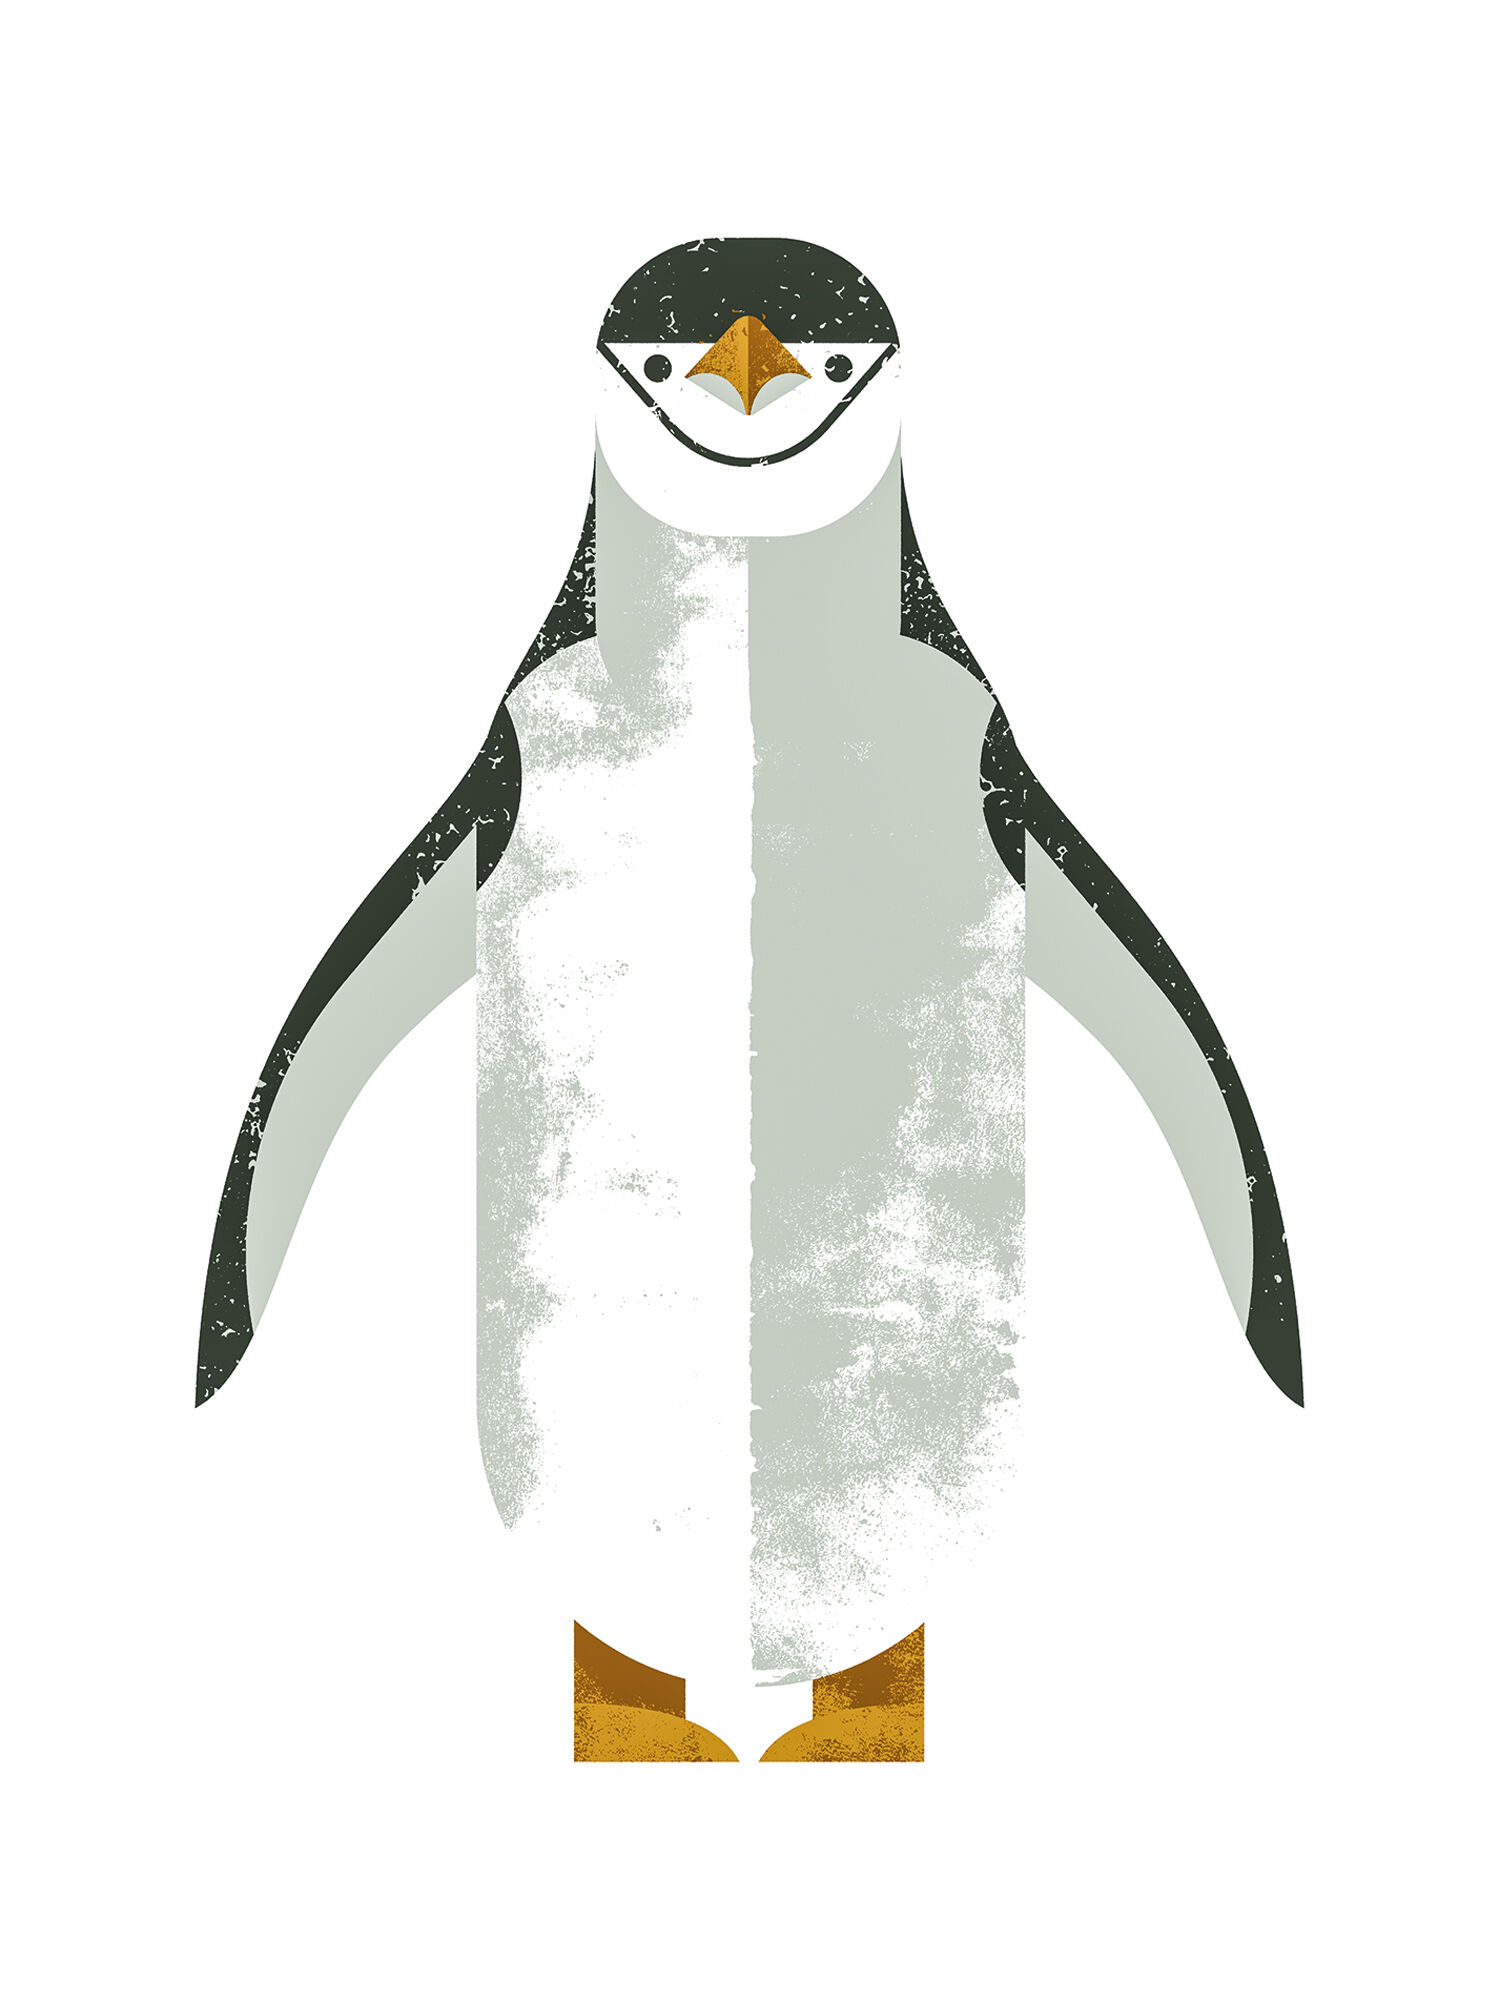 Tableau "Pingouin" (2016) von Dieter Braun